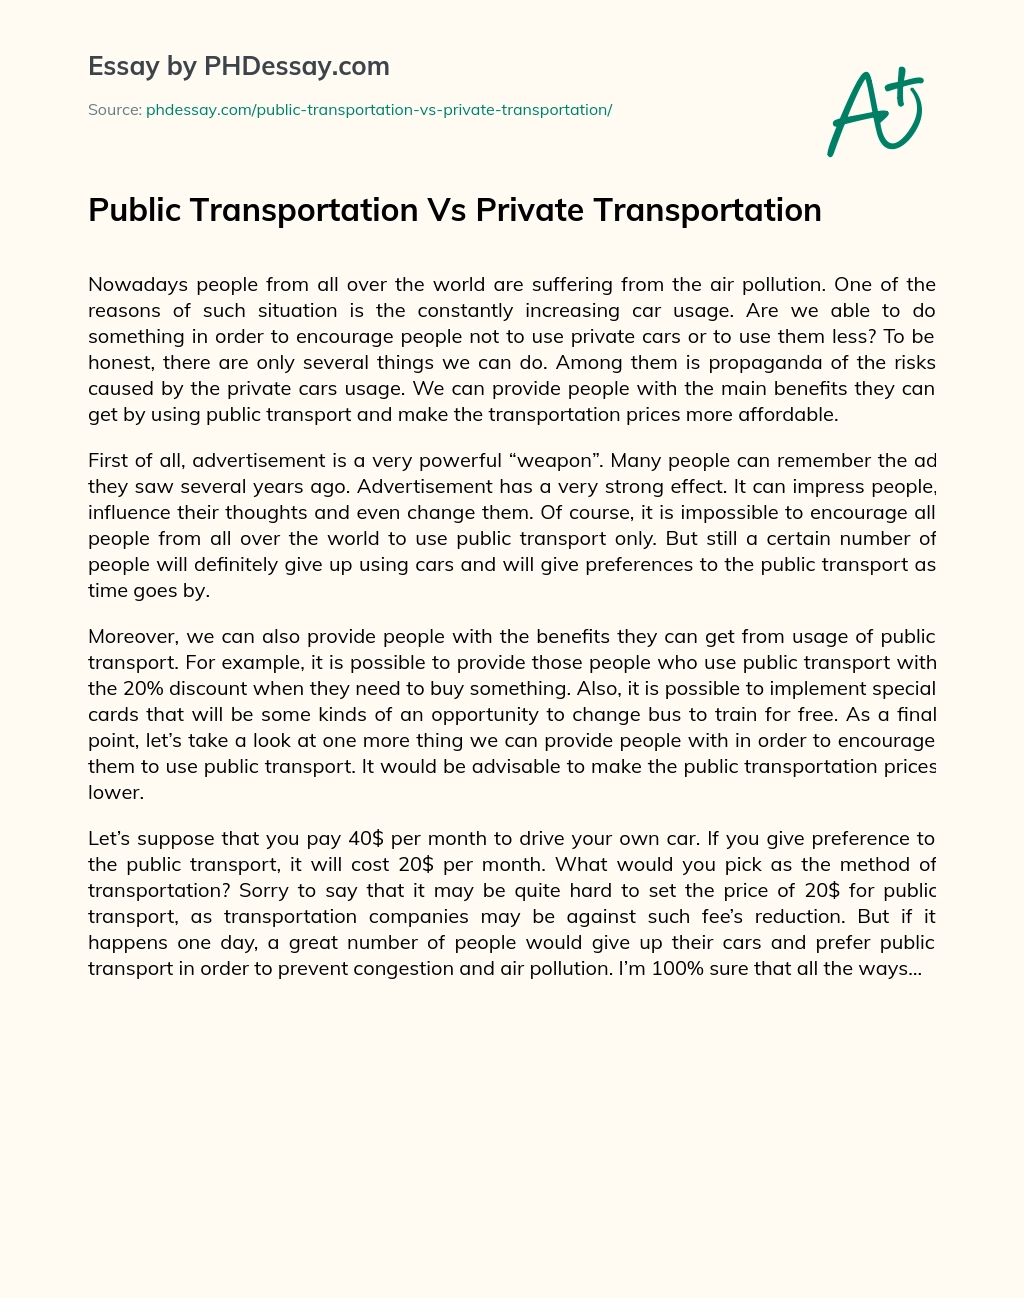 Public Transportation Vs Private Transportation essay